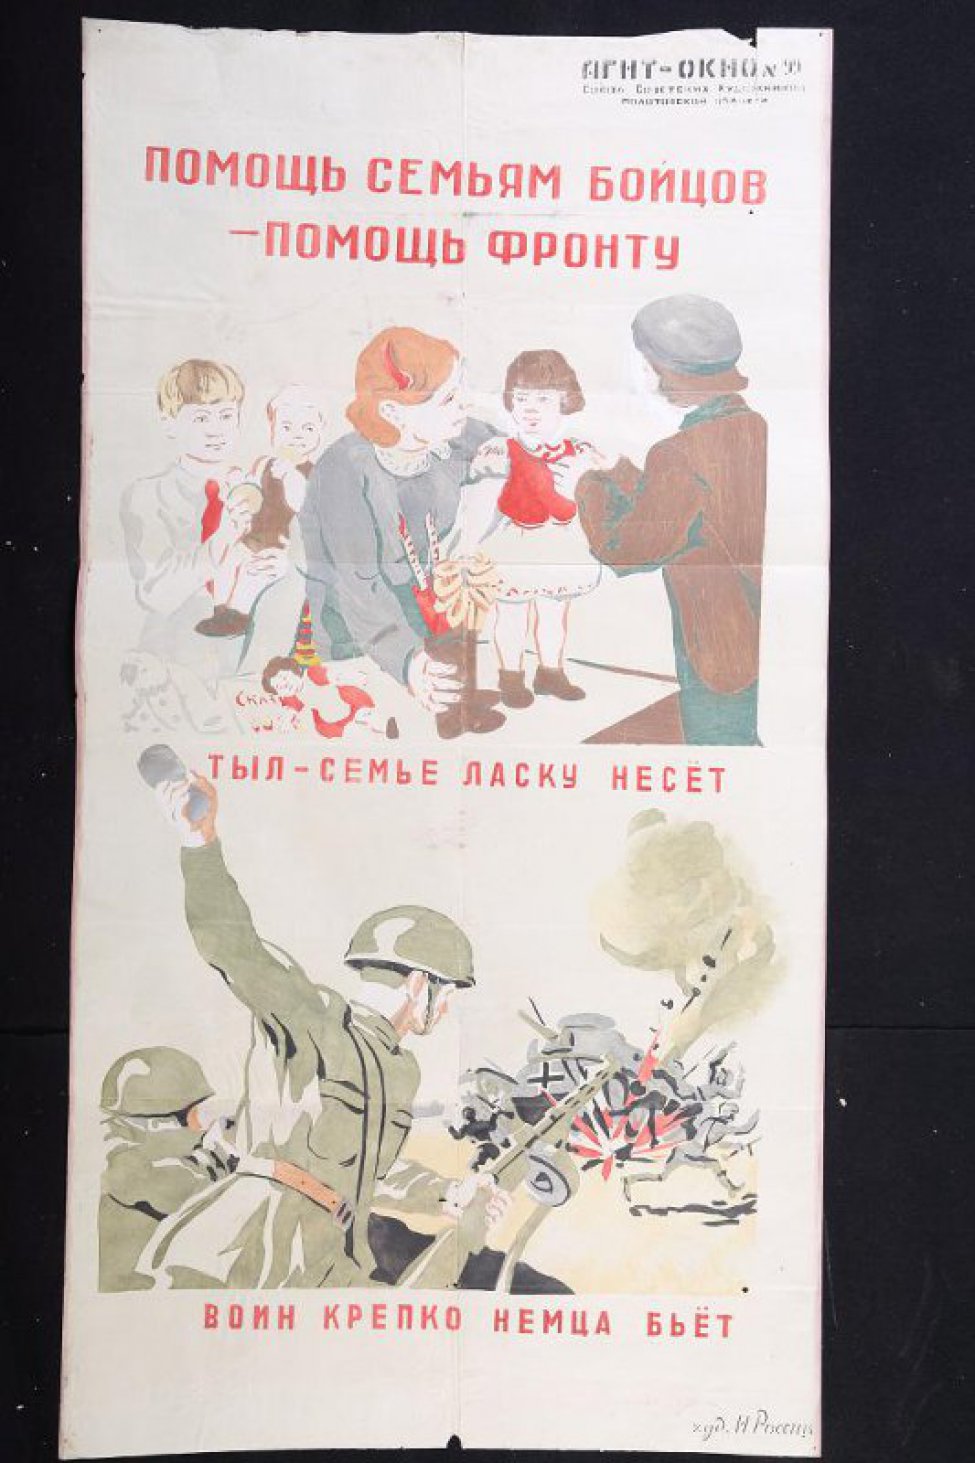 Помещено 2 рисунка: На верхнем: на столе стоит девочка, ее одевают две женщины, на столе лежат игрушки,текст: " тыл- семье ласку несет",  на нижнем: советский боец с гранатой в руке и автоматом в другой, вдали взрывающийся немецкий танк, текст: " воин крепко немца бьет."